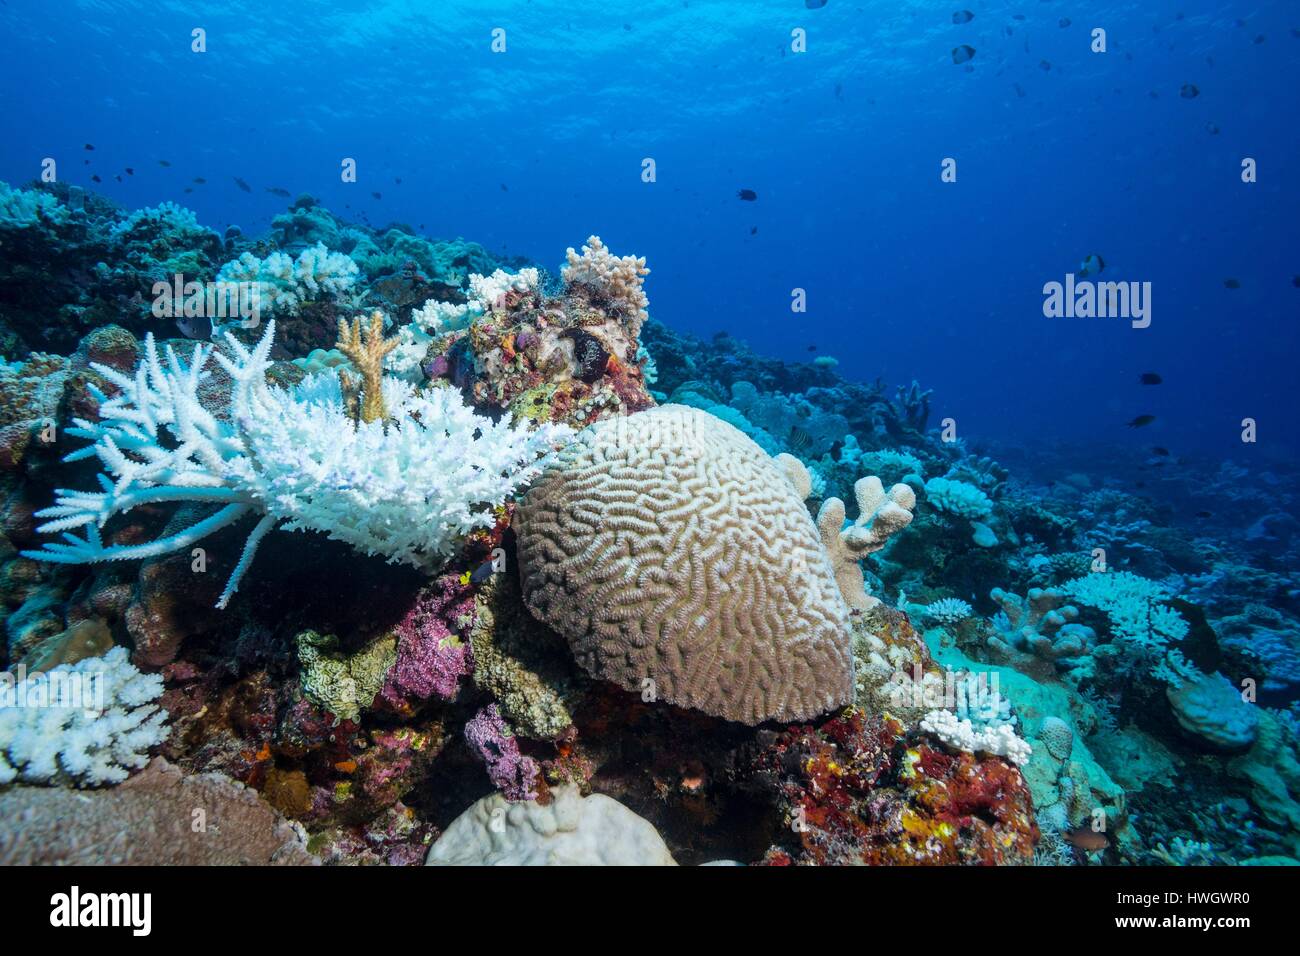 Filippine, Mindoro, Apo Reef parco naturale, Coral reef di corallo in fase di candeggio Foto Stock